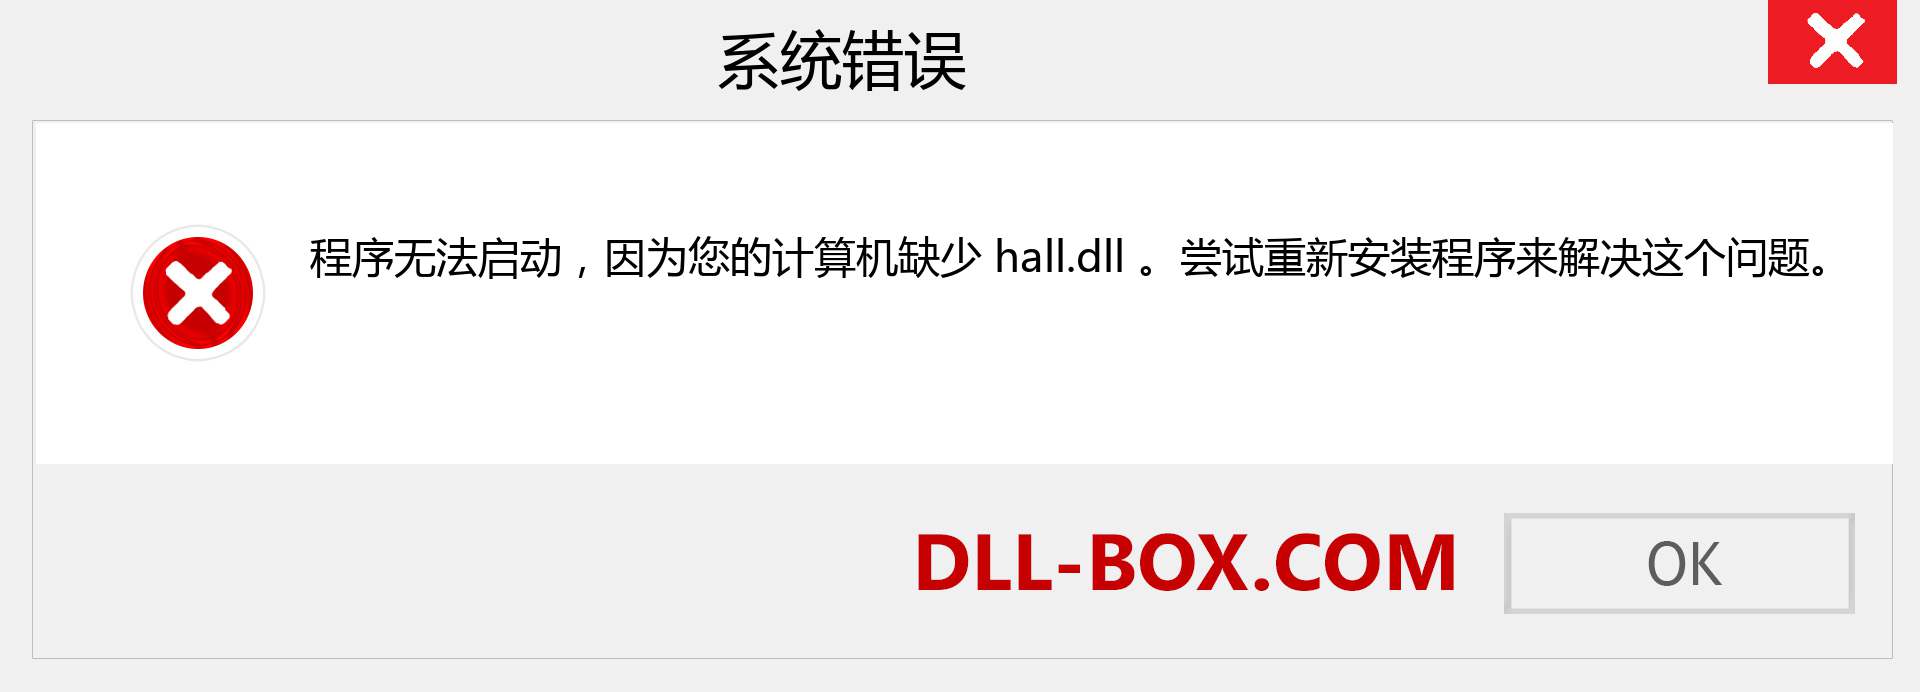 hall.dll 文件丢失？。 适用于 Windows 7、8、10 的下载 - 修复 Windows、照片、图像上的 hall dll 丢失错误